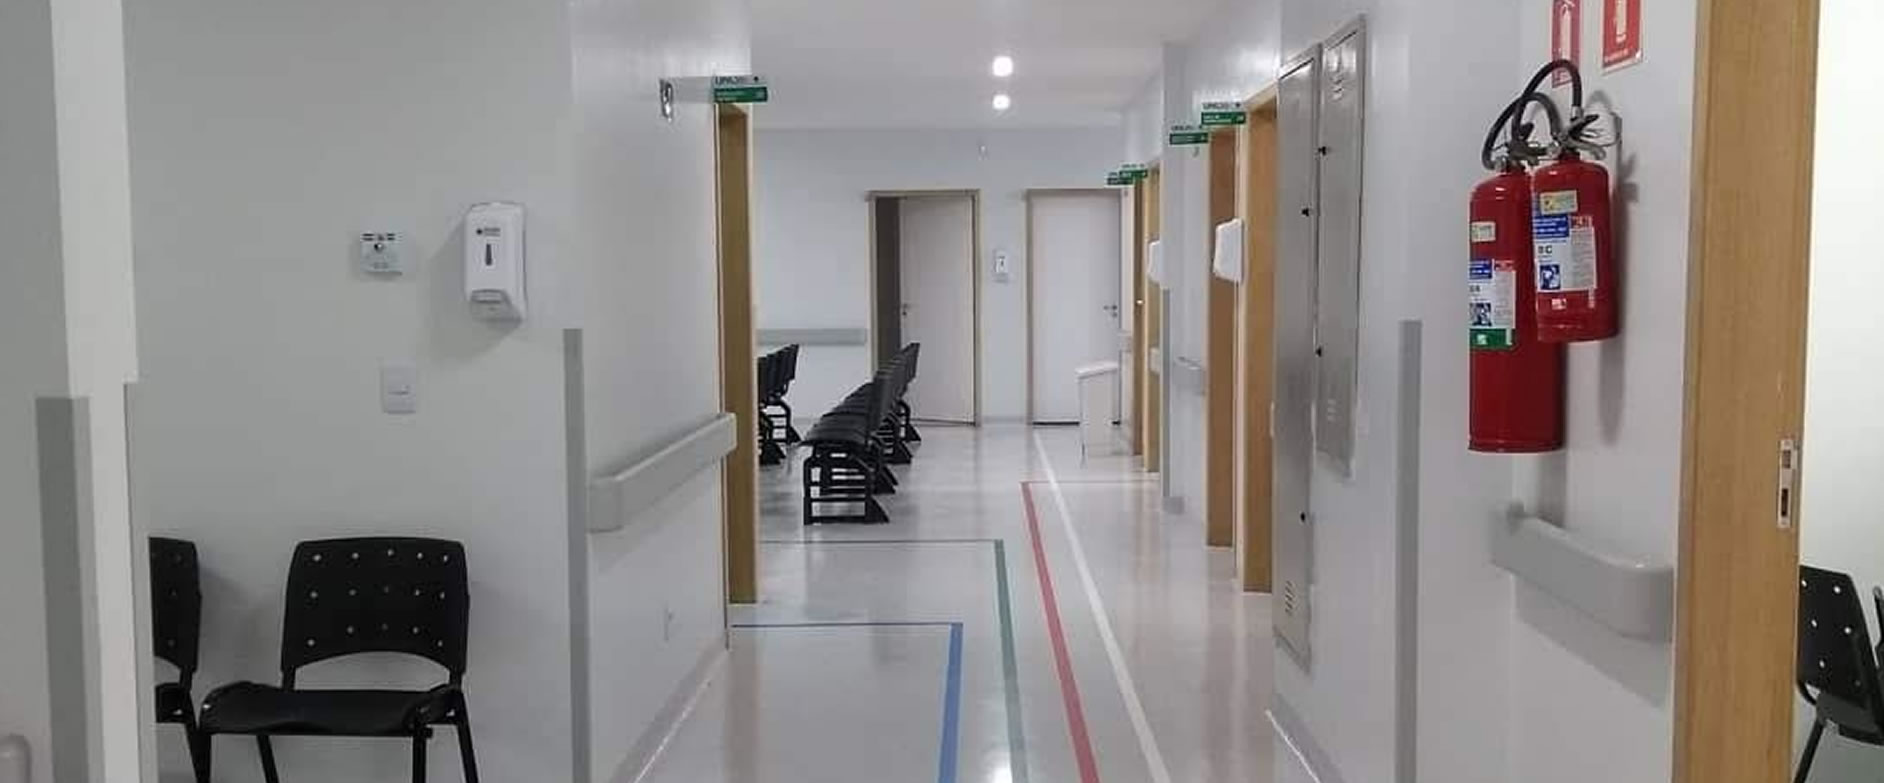 Projeto de Arquitetura Hospitalar Clínicas Consultórios